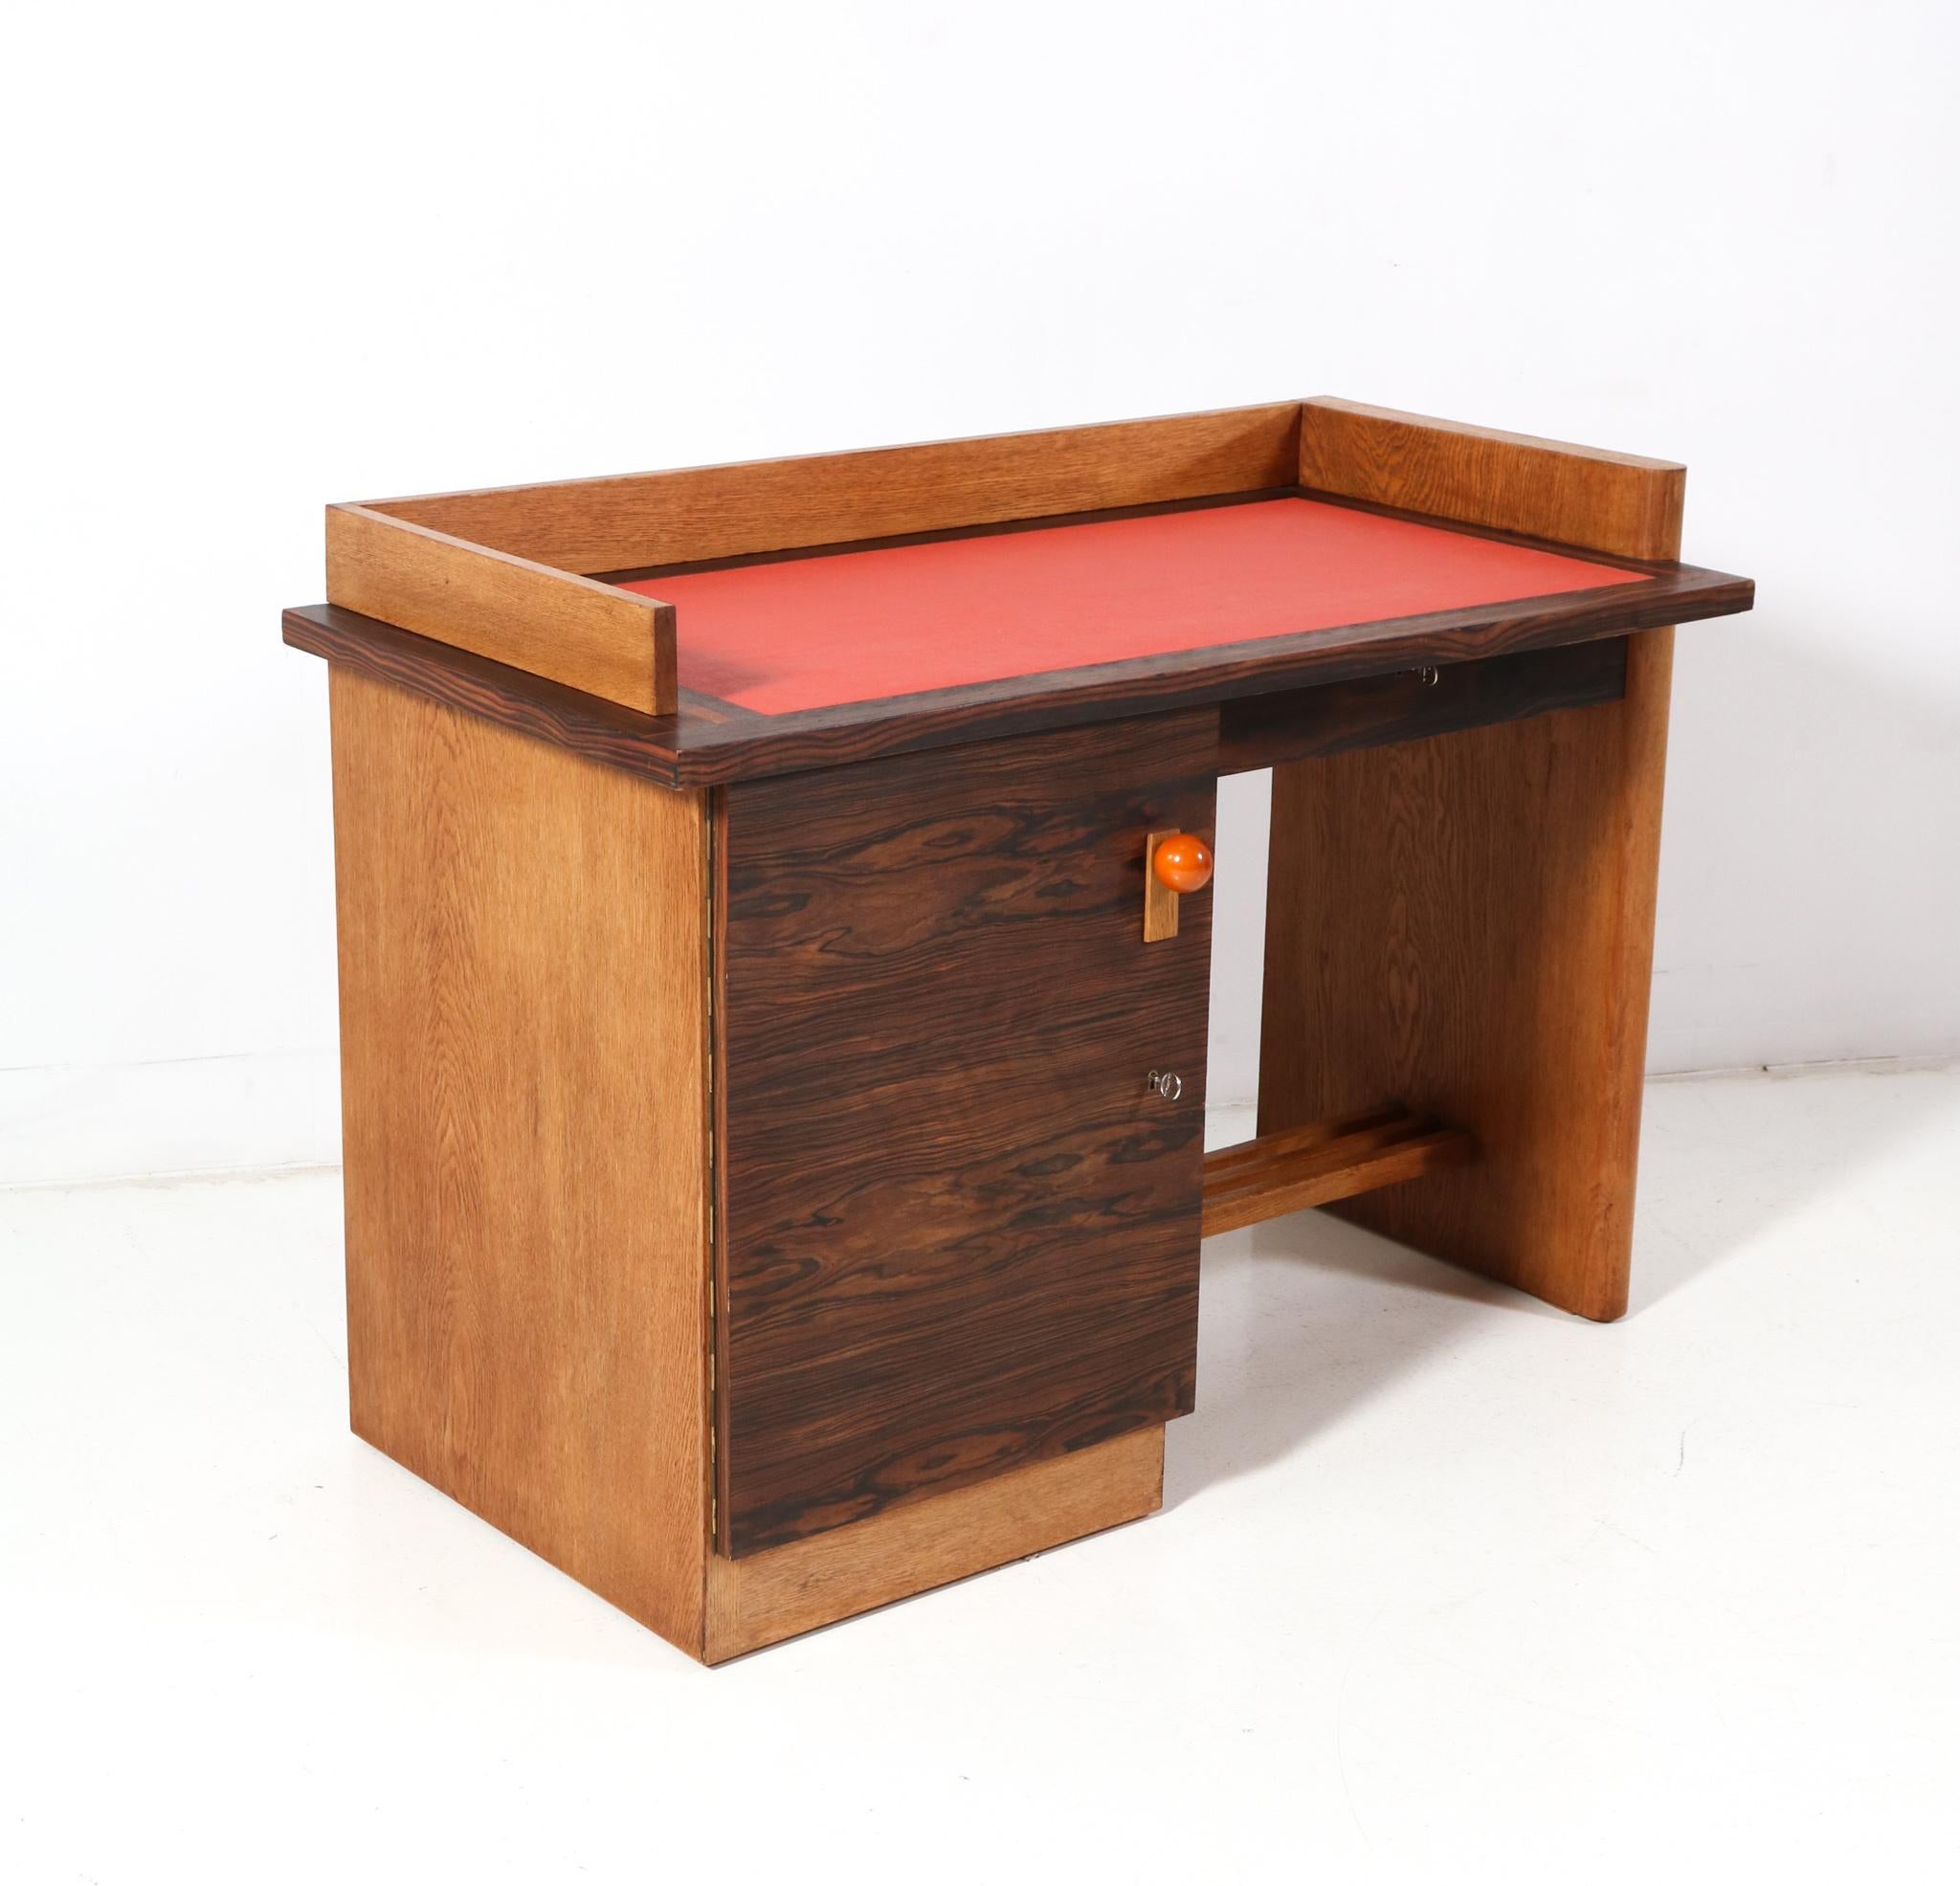 Early 20th Century Oak Art Deco Modernist Desk by Jan Brunott, 1920s